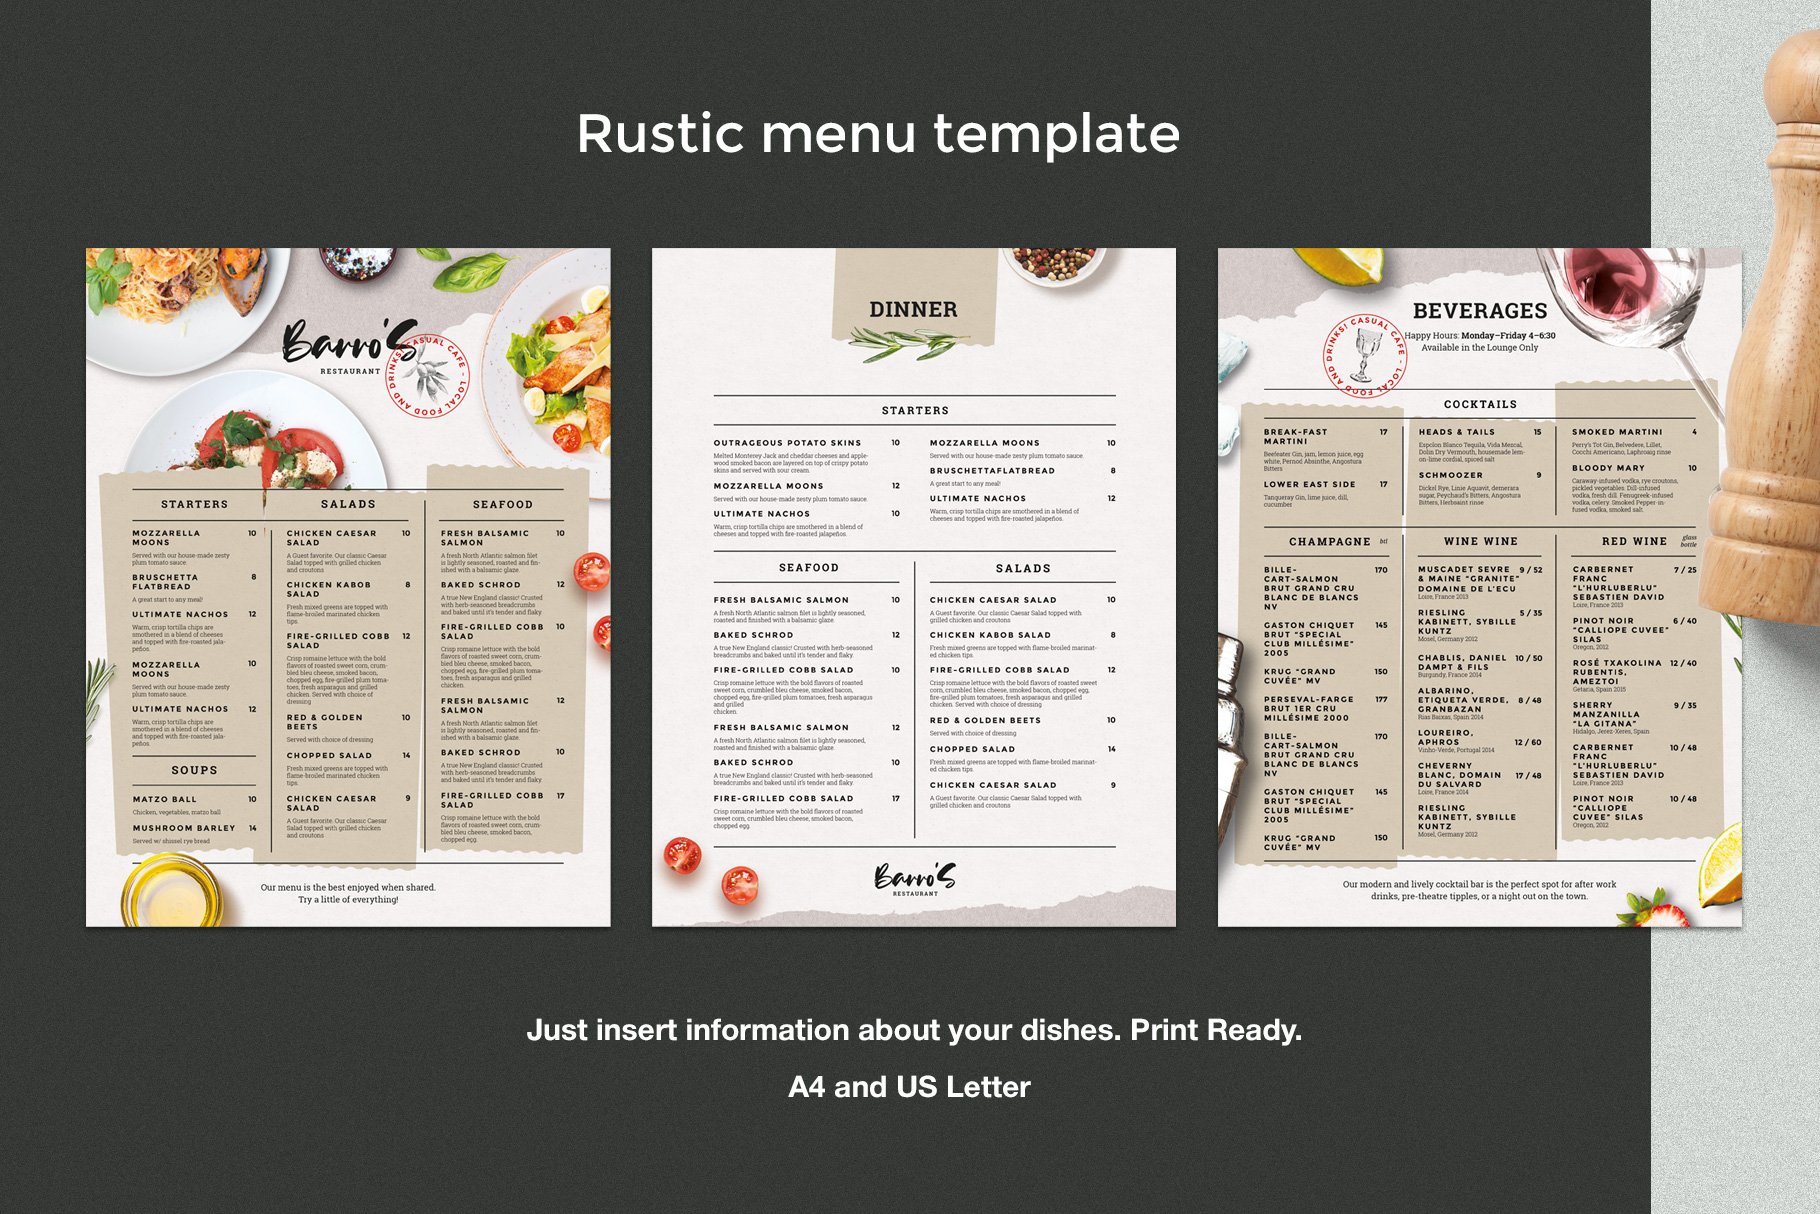 Rustic Restaurant Menu preview image.